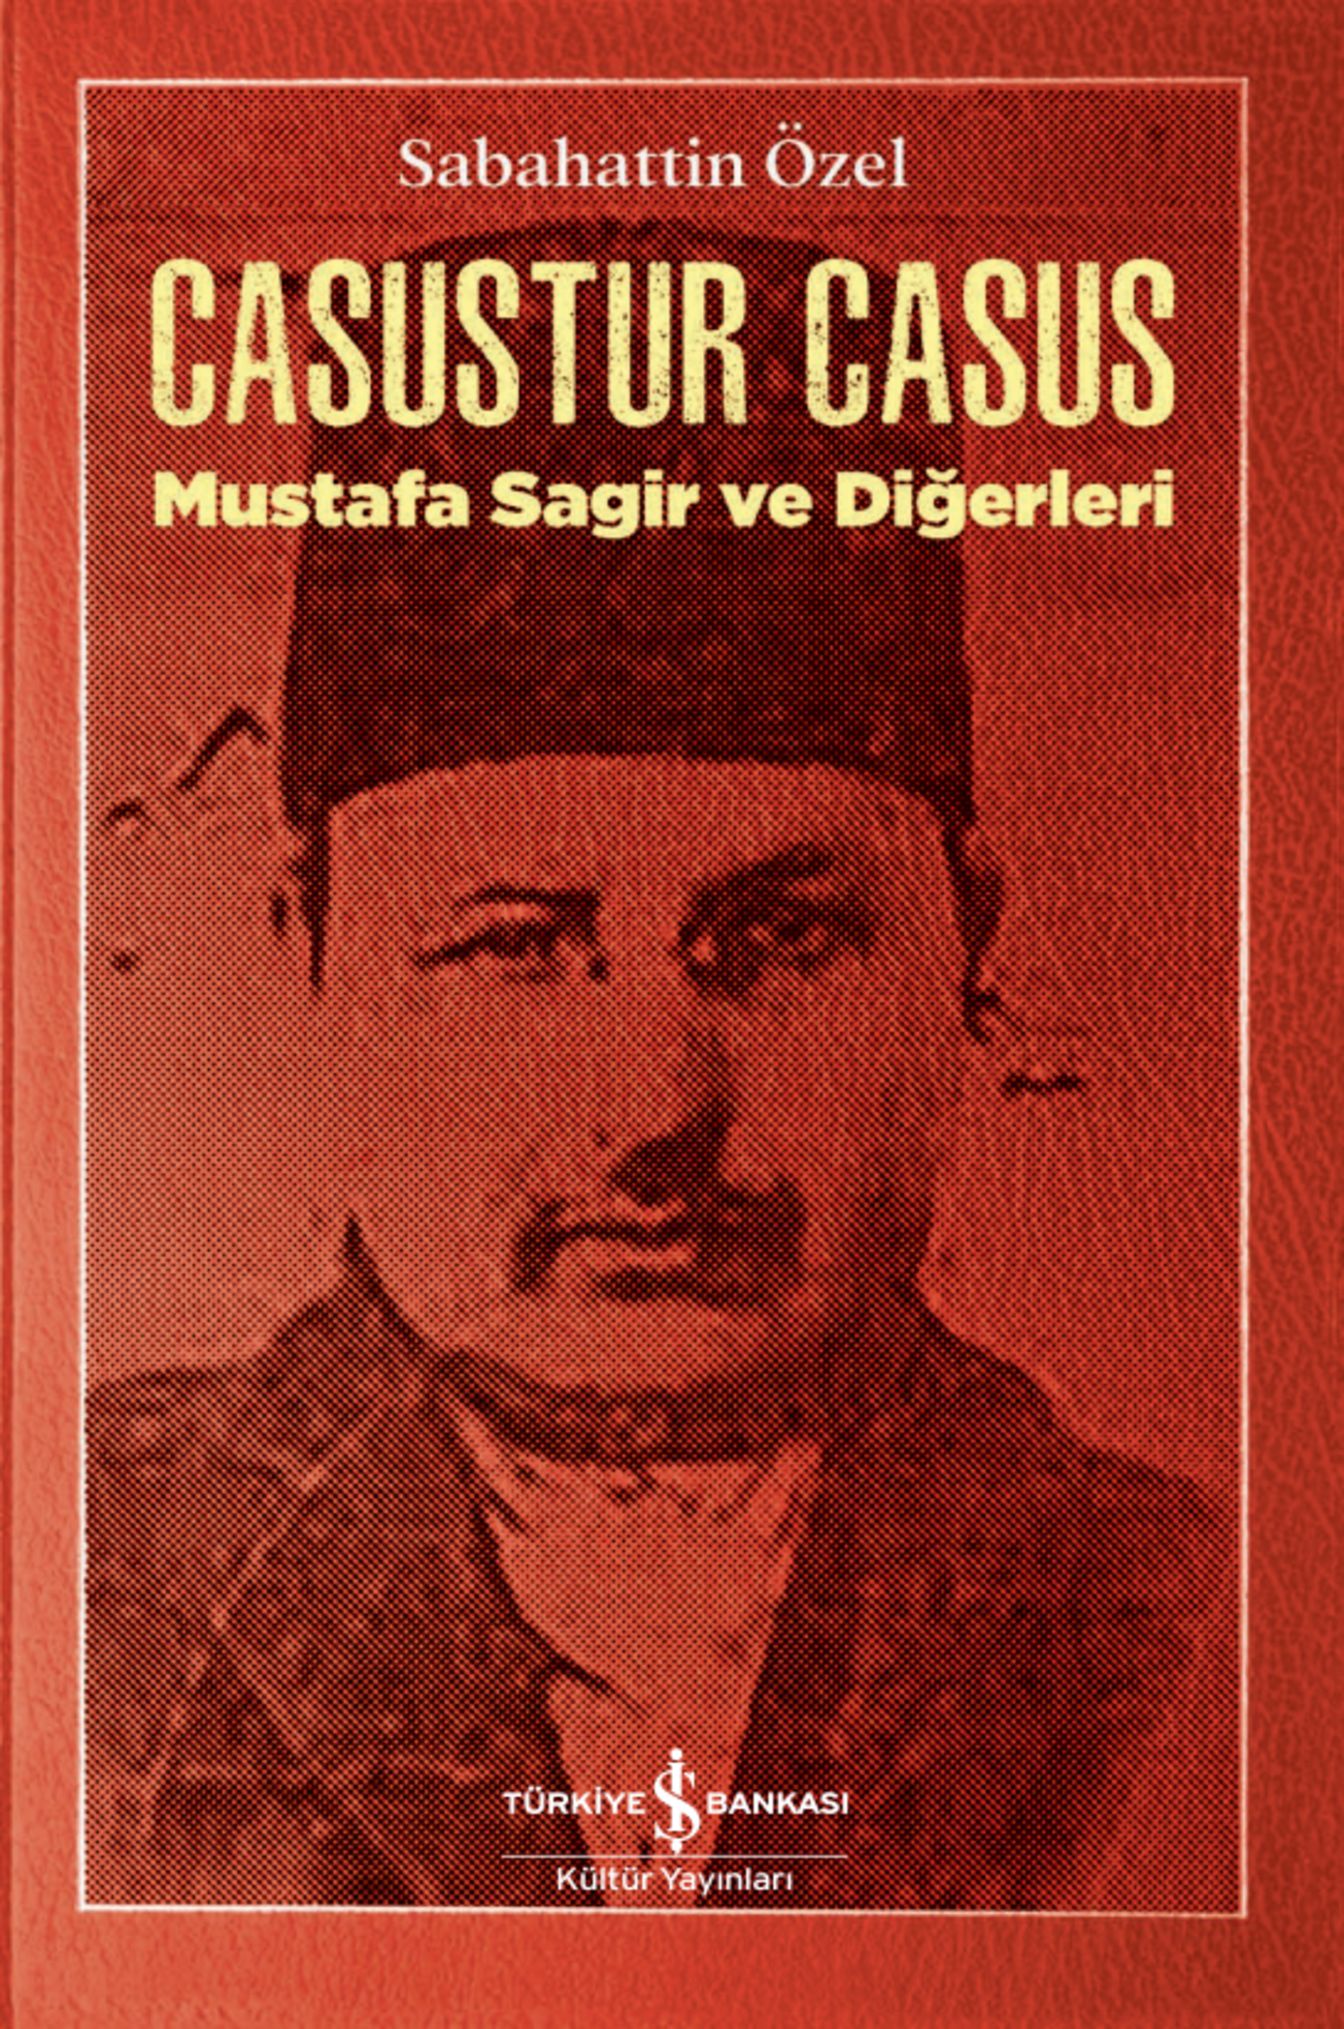 CASUSTUR CASUS (Sabahattin Özel / İş Kültür)